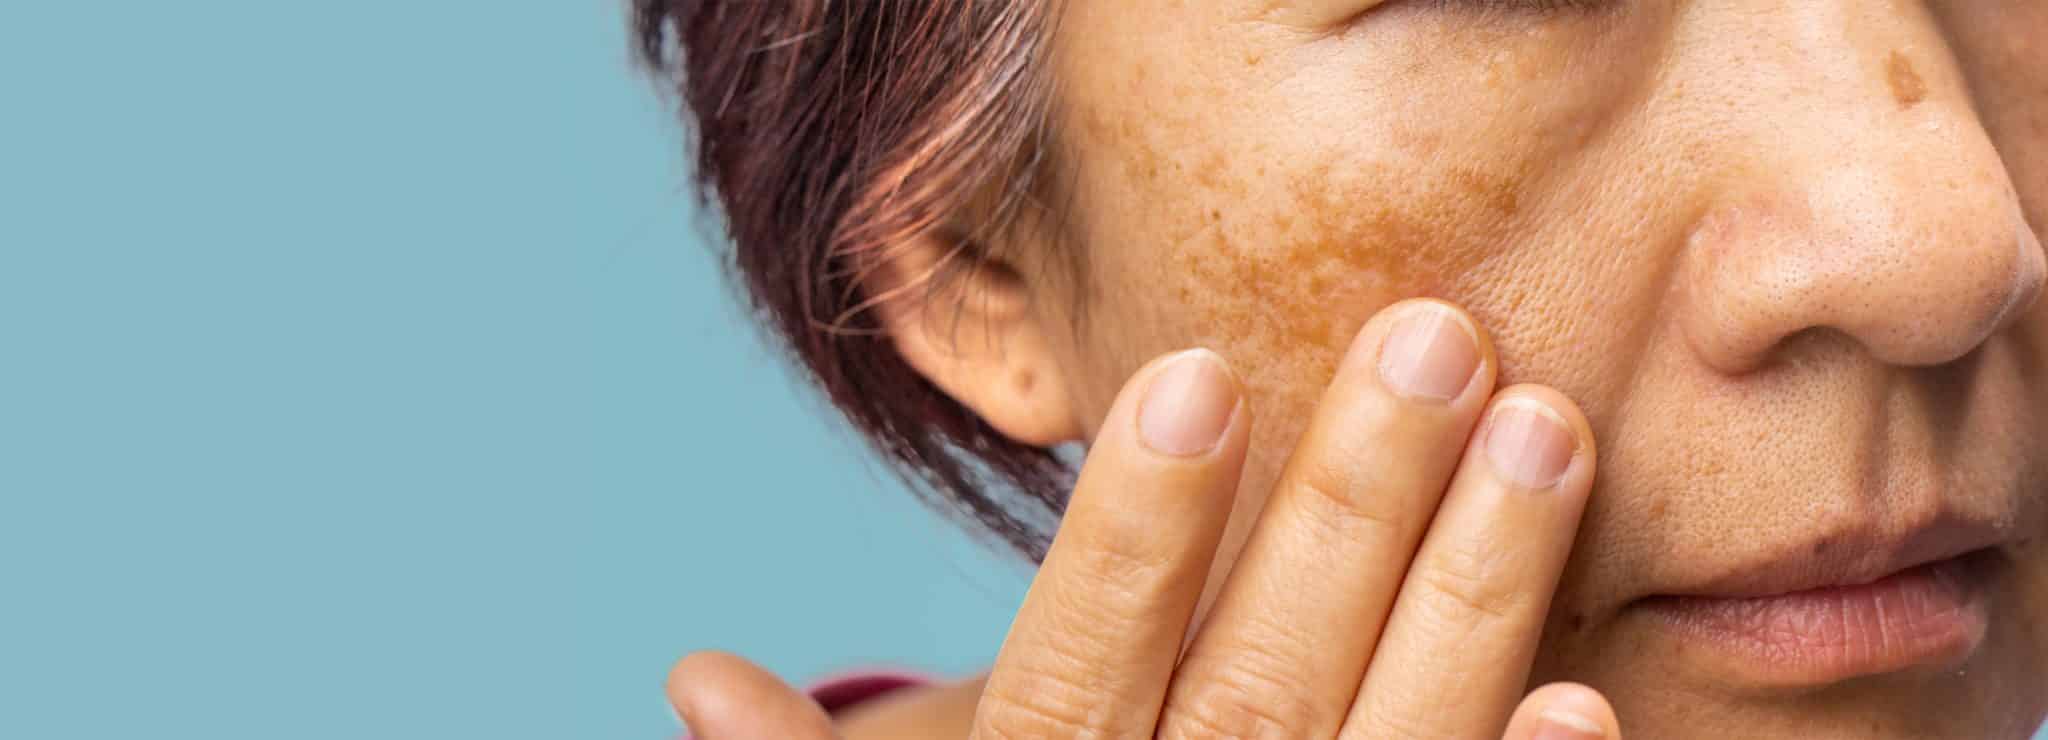 Kvinde med Melasma - pigmenterpletter i ansigtet